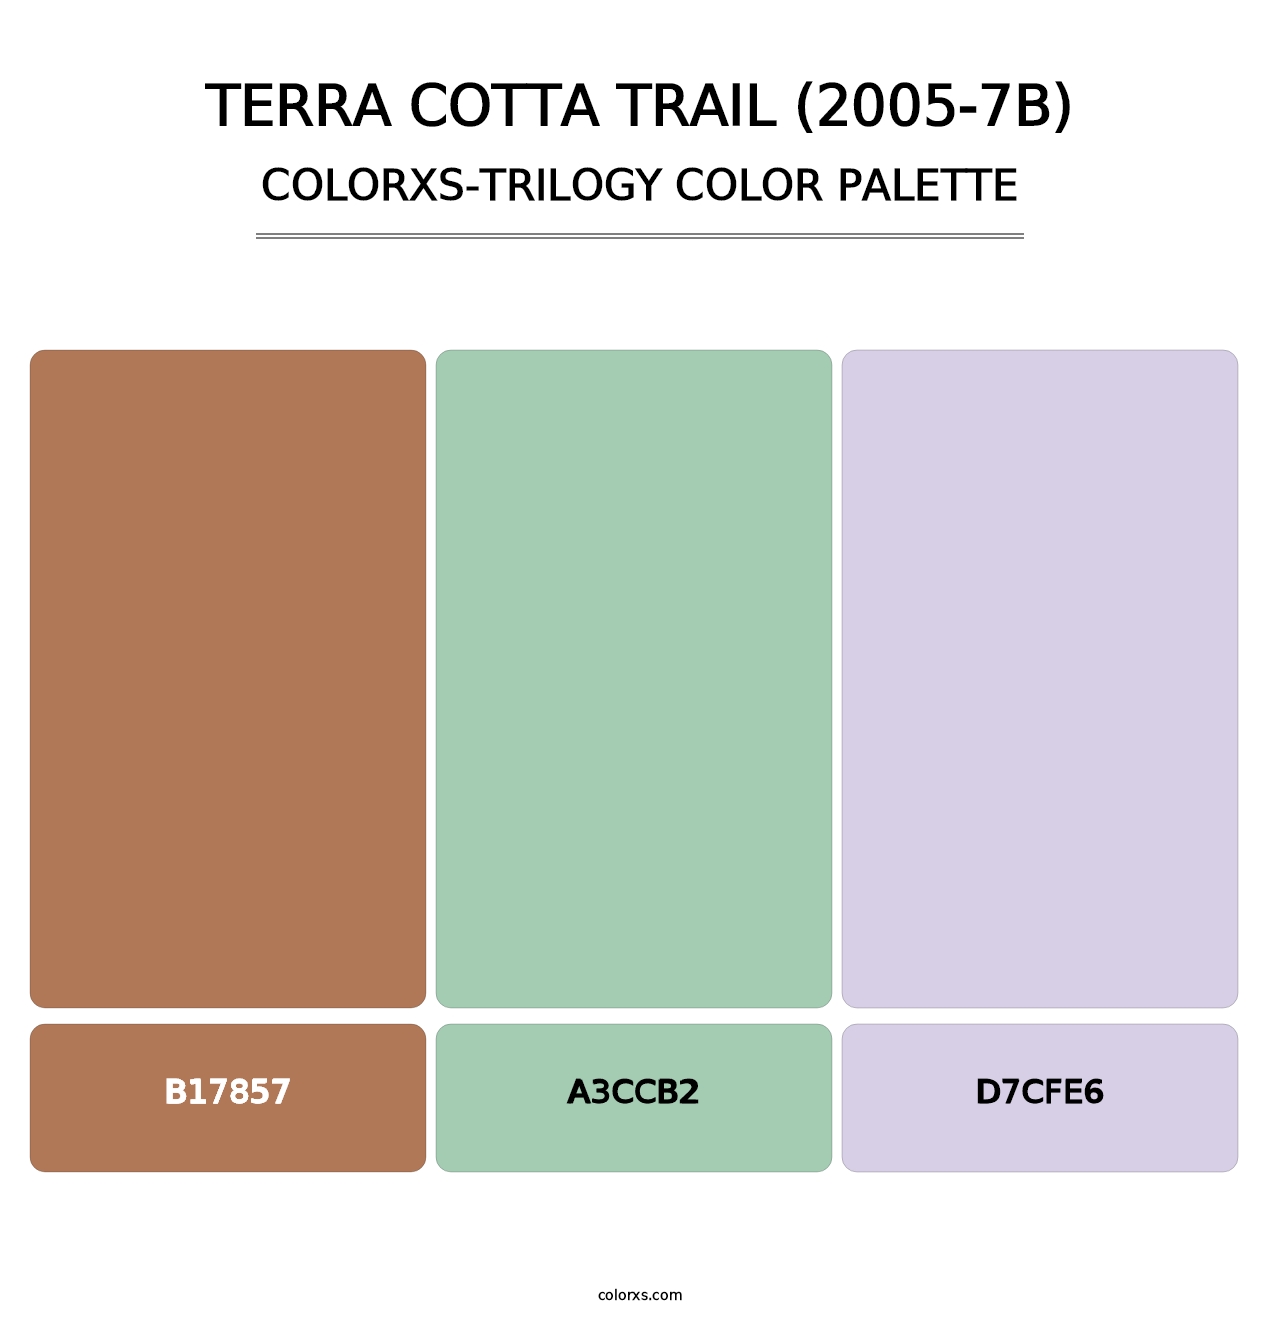 Terra Cotta Trail (2005-7B) - Colorxs Trilogy Palette